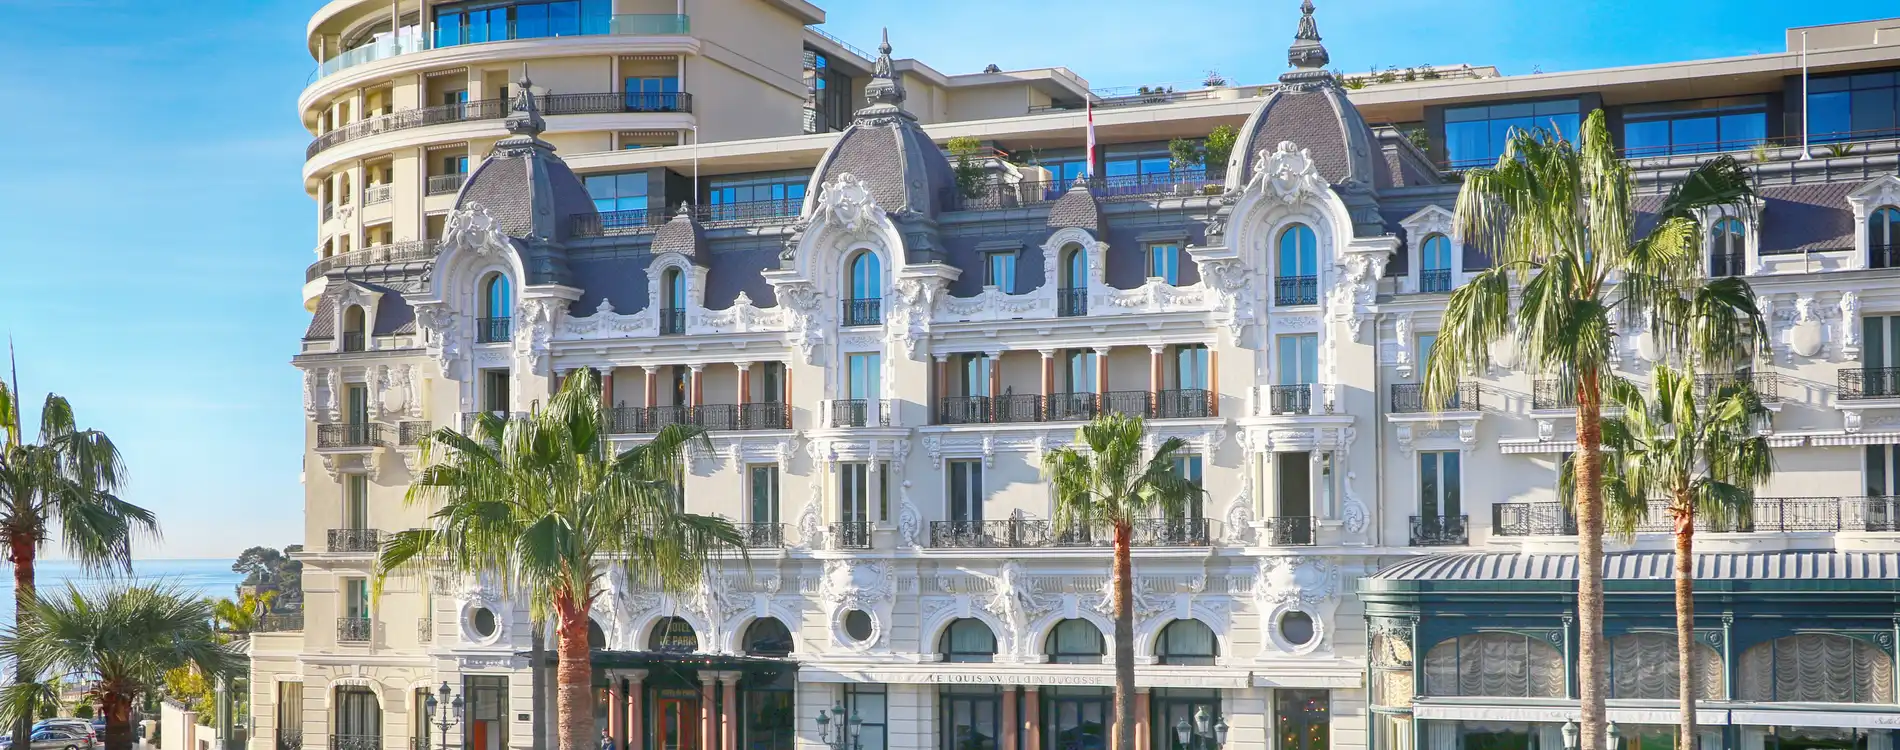 Hotel de Paris Monte Carlo, iconic palace in Monaco